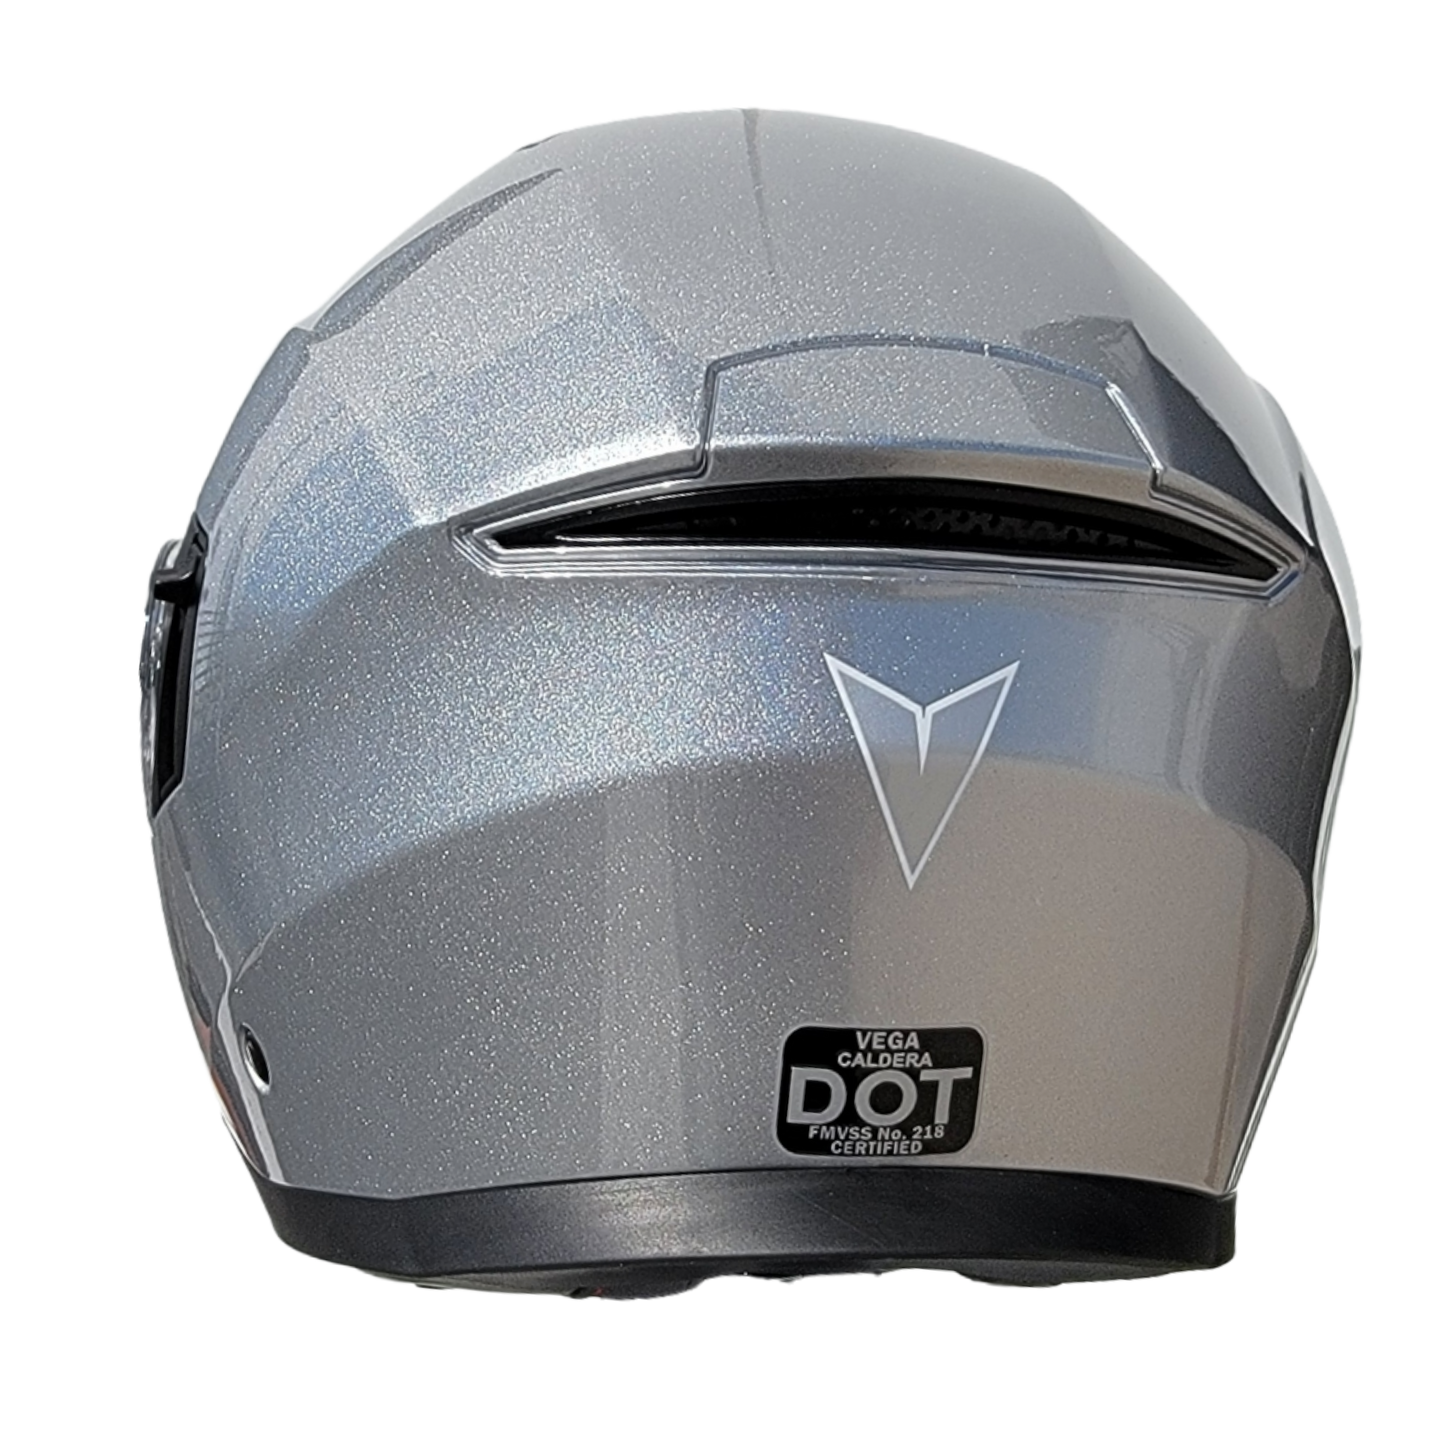 Vega Caldera Modular Helmet